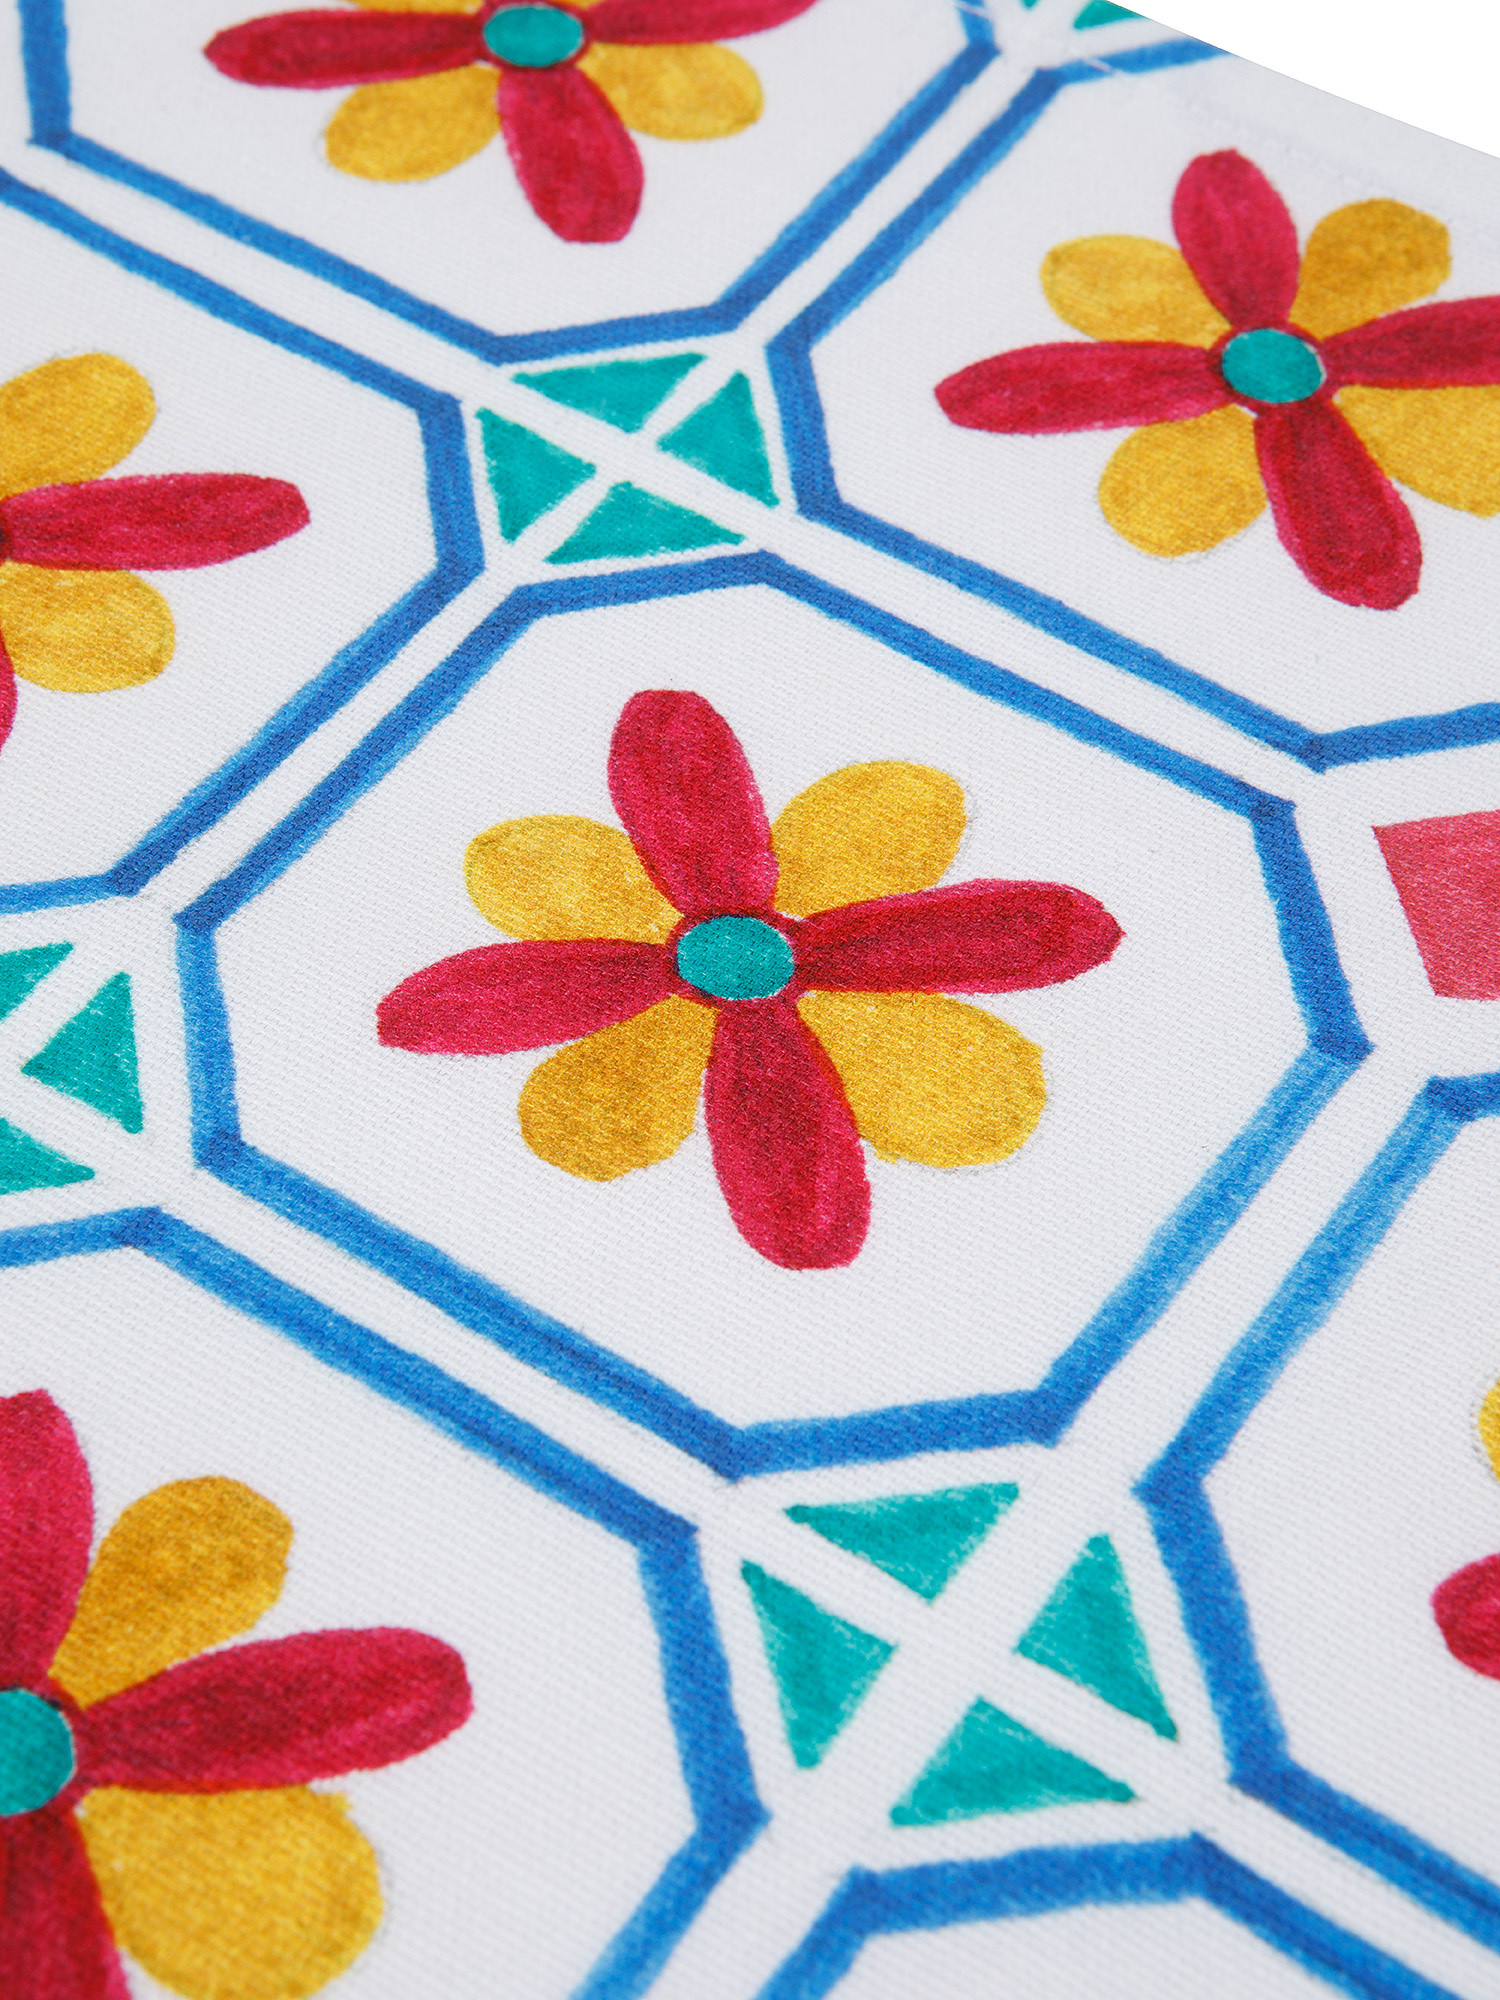 Tovaglietta puro cotone stampa piastrelle, Multicolor, large image number 1